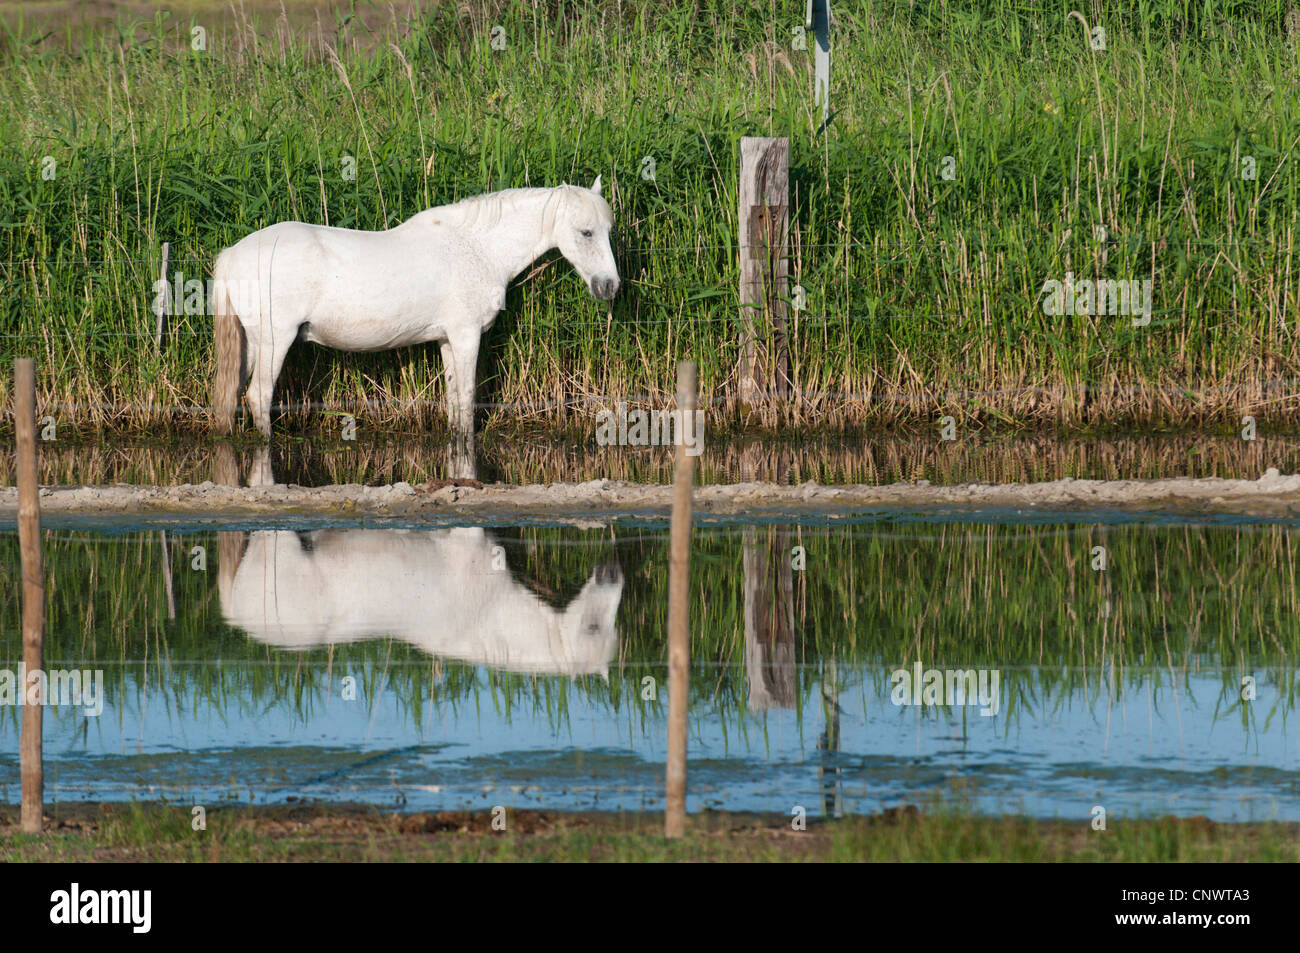 Cheval de Camargue (Equus caballus przewalskii. f), debout dans l'eau à une clôture, l'alimentation reed, France, Camargue Banque D'Images